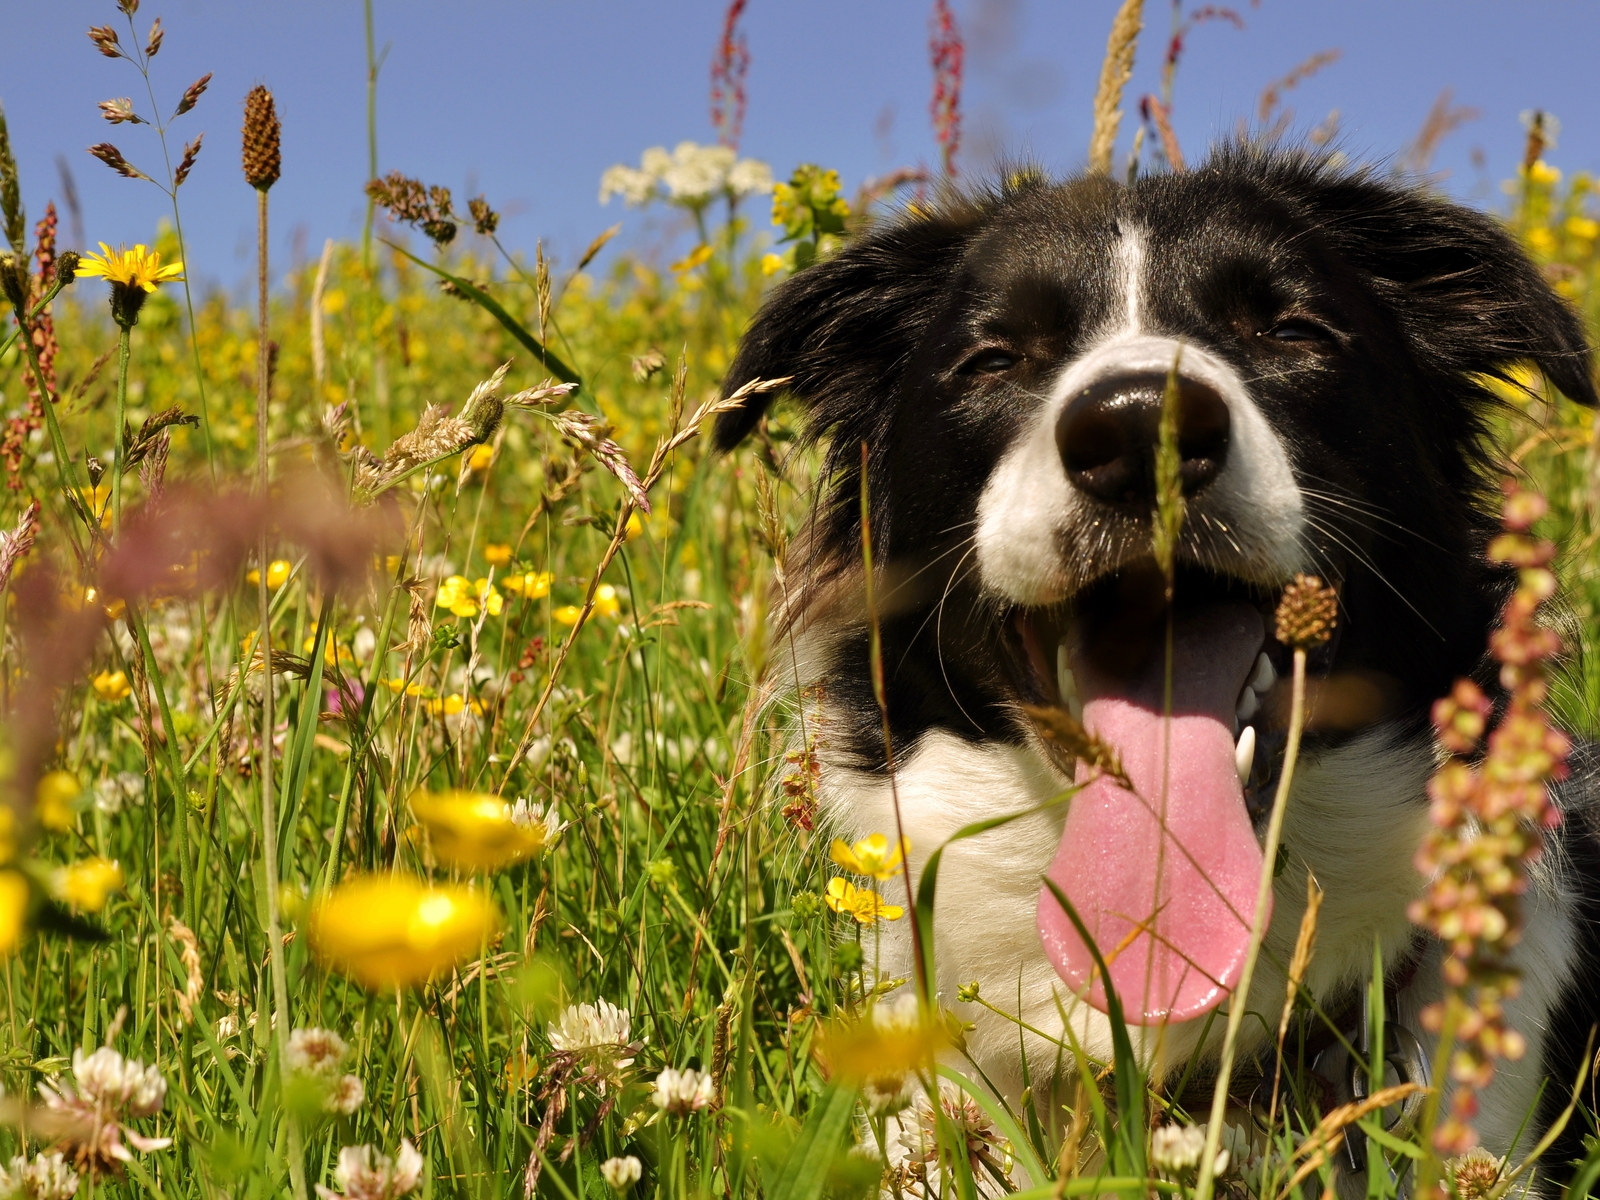 Картинка: Собака, язык, жарко, трава, поле, цветы, лежит, лето